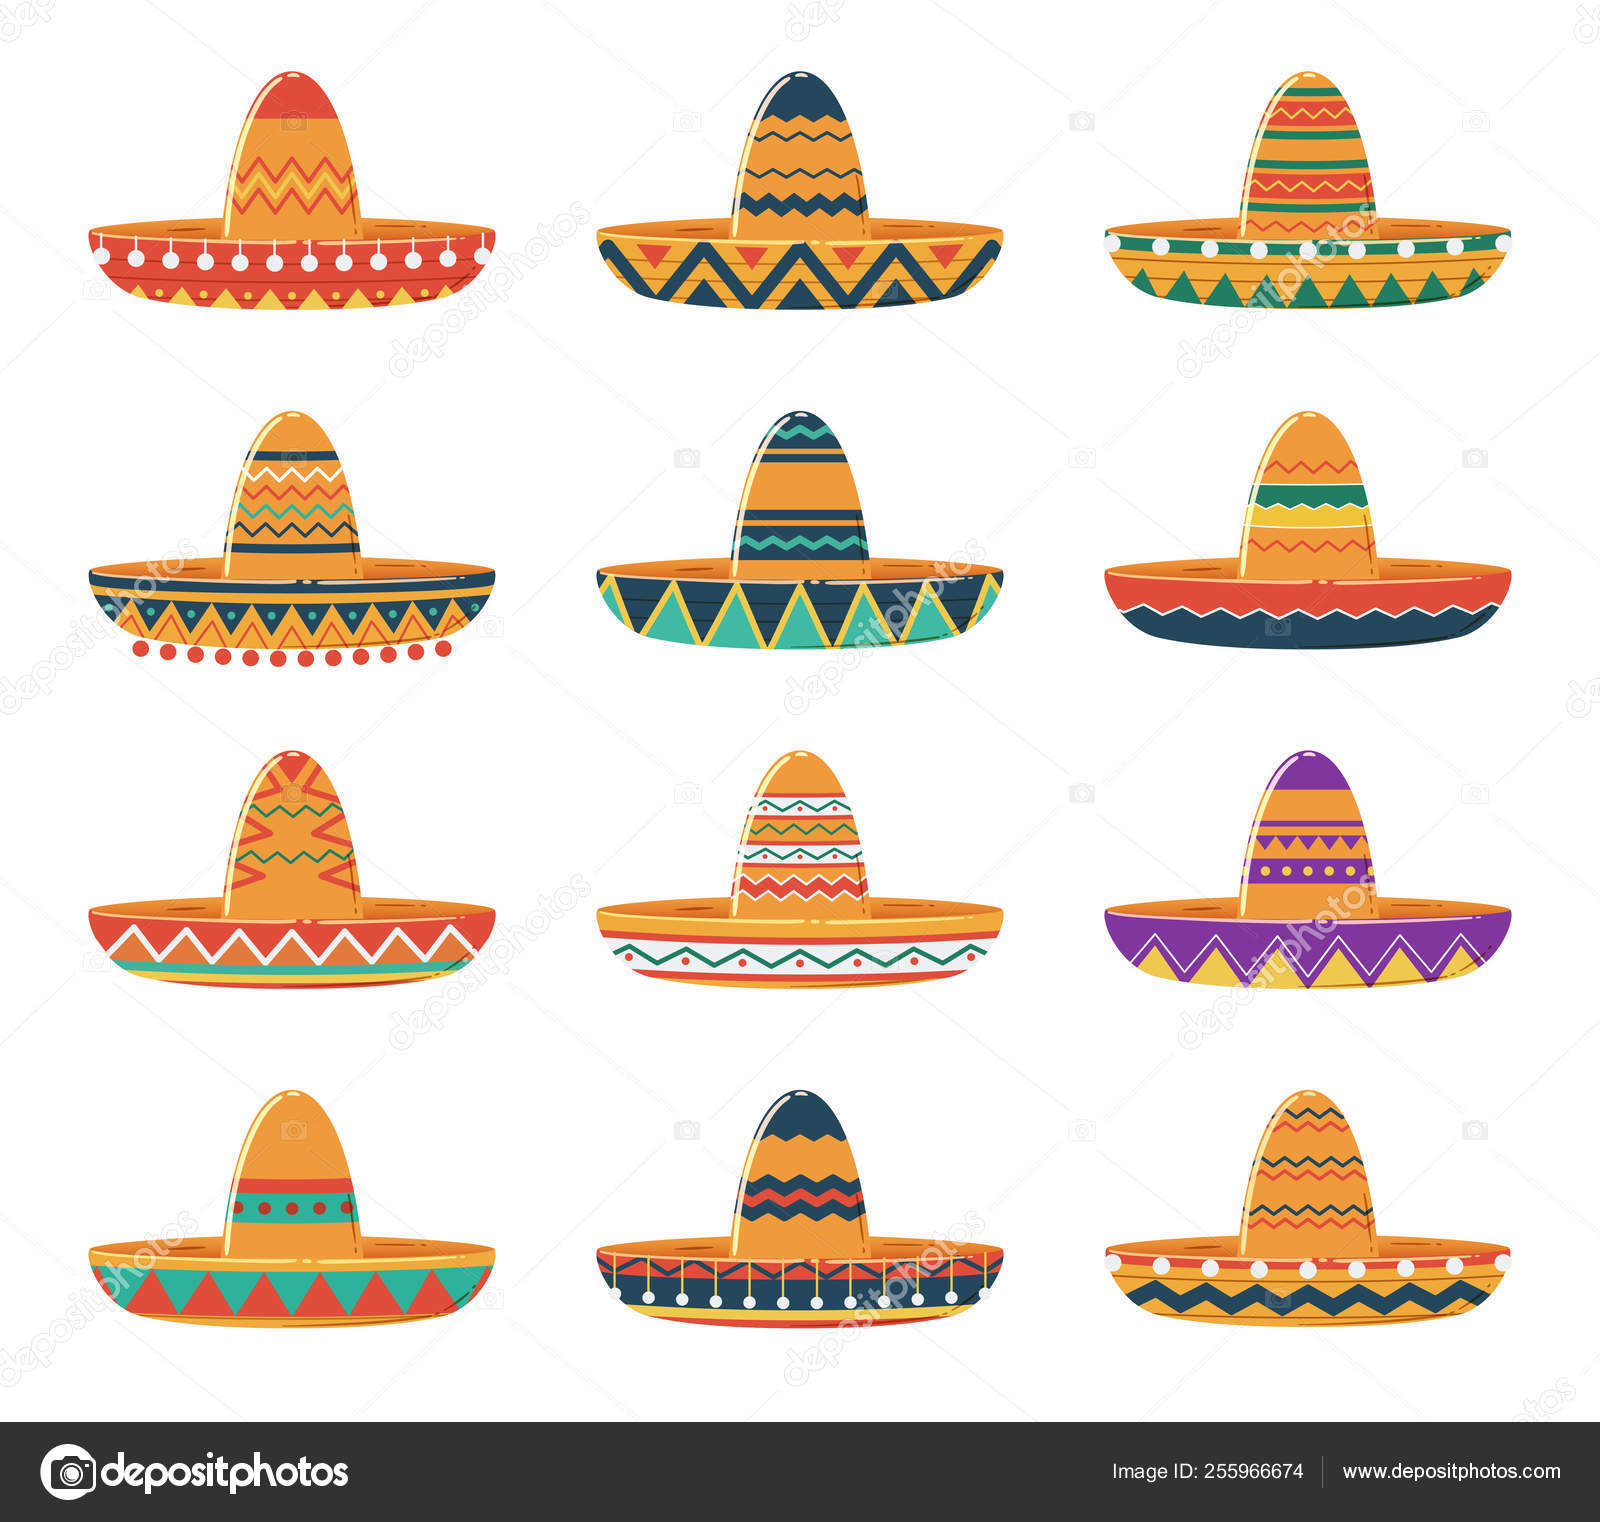 17 ilustraciones de stock de Sombreros charros | Depositphotos®